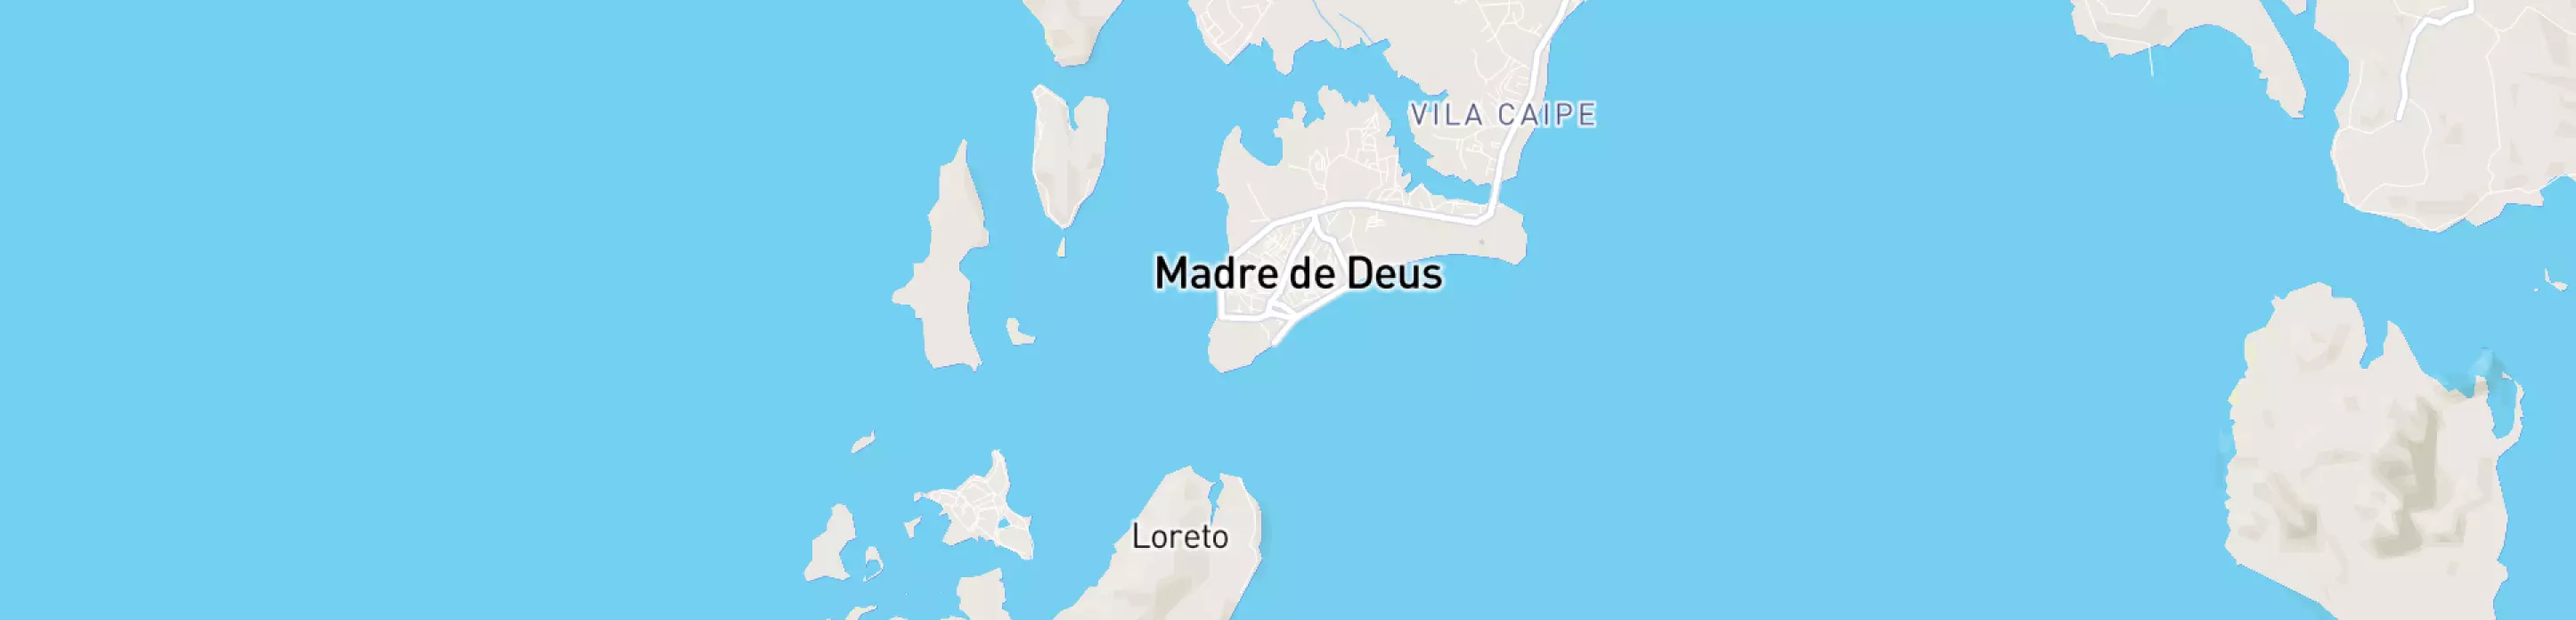 Mapa mostrando localização do terminal logístico de Madre de Deus, da Petrobras.